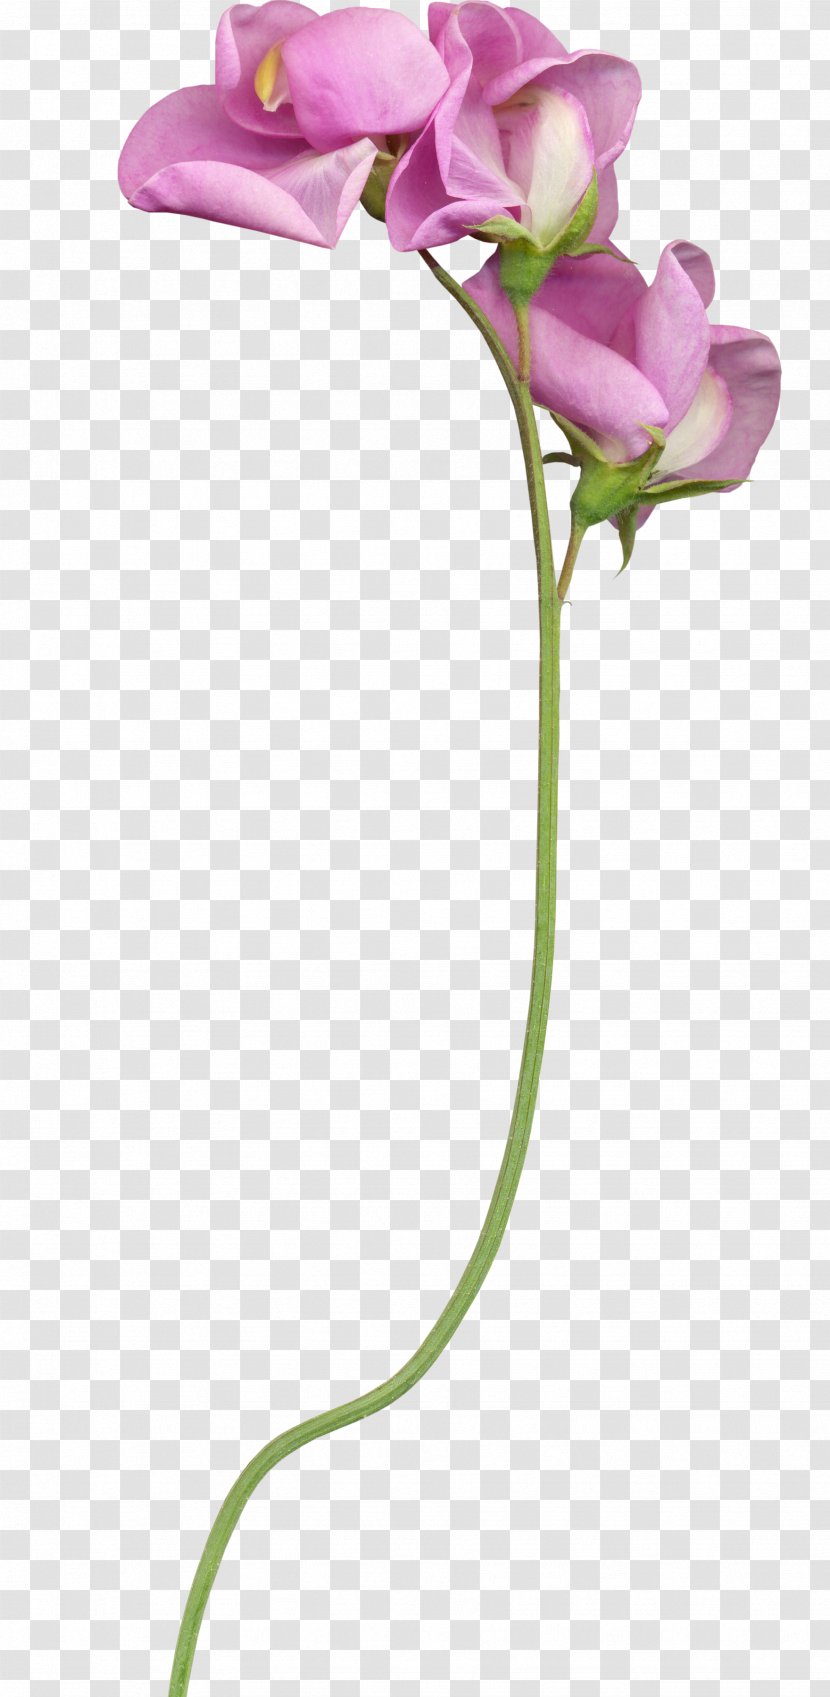 Cut Flowers Plant Stem Bud - Flowerpot Transparent PNG